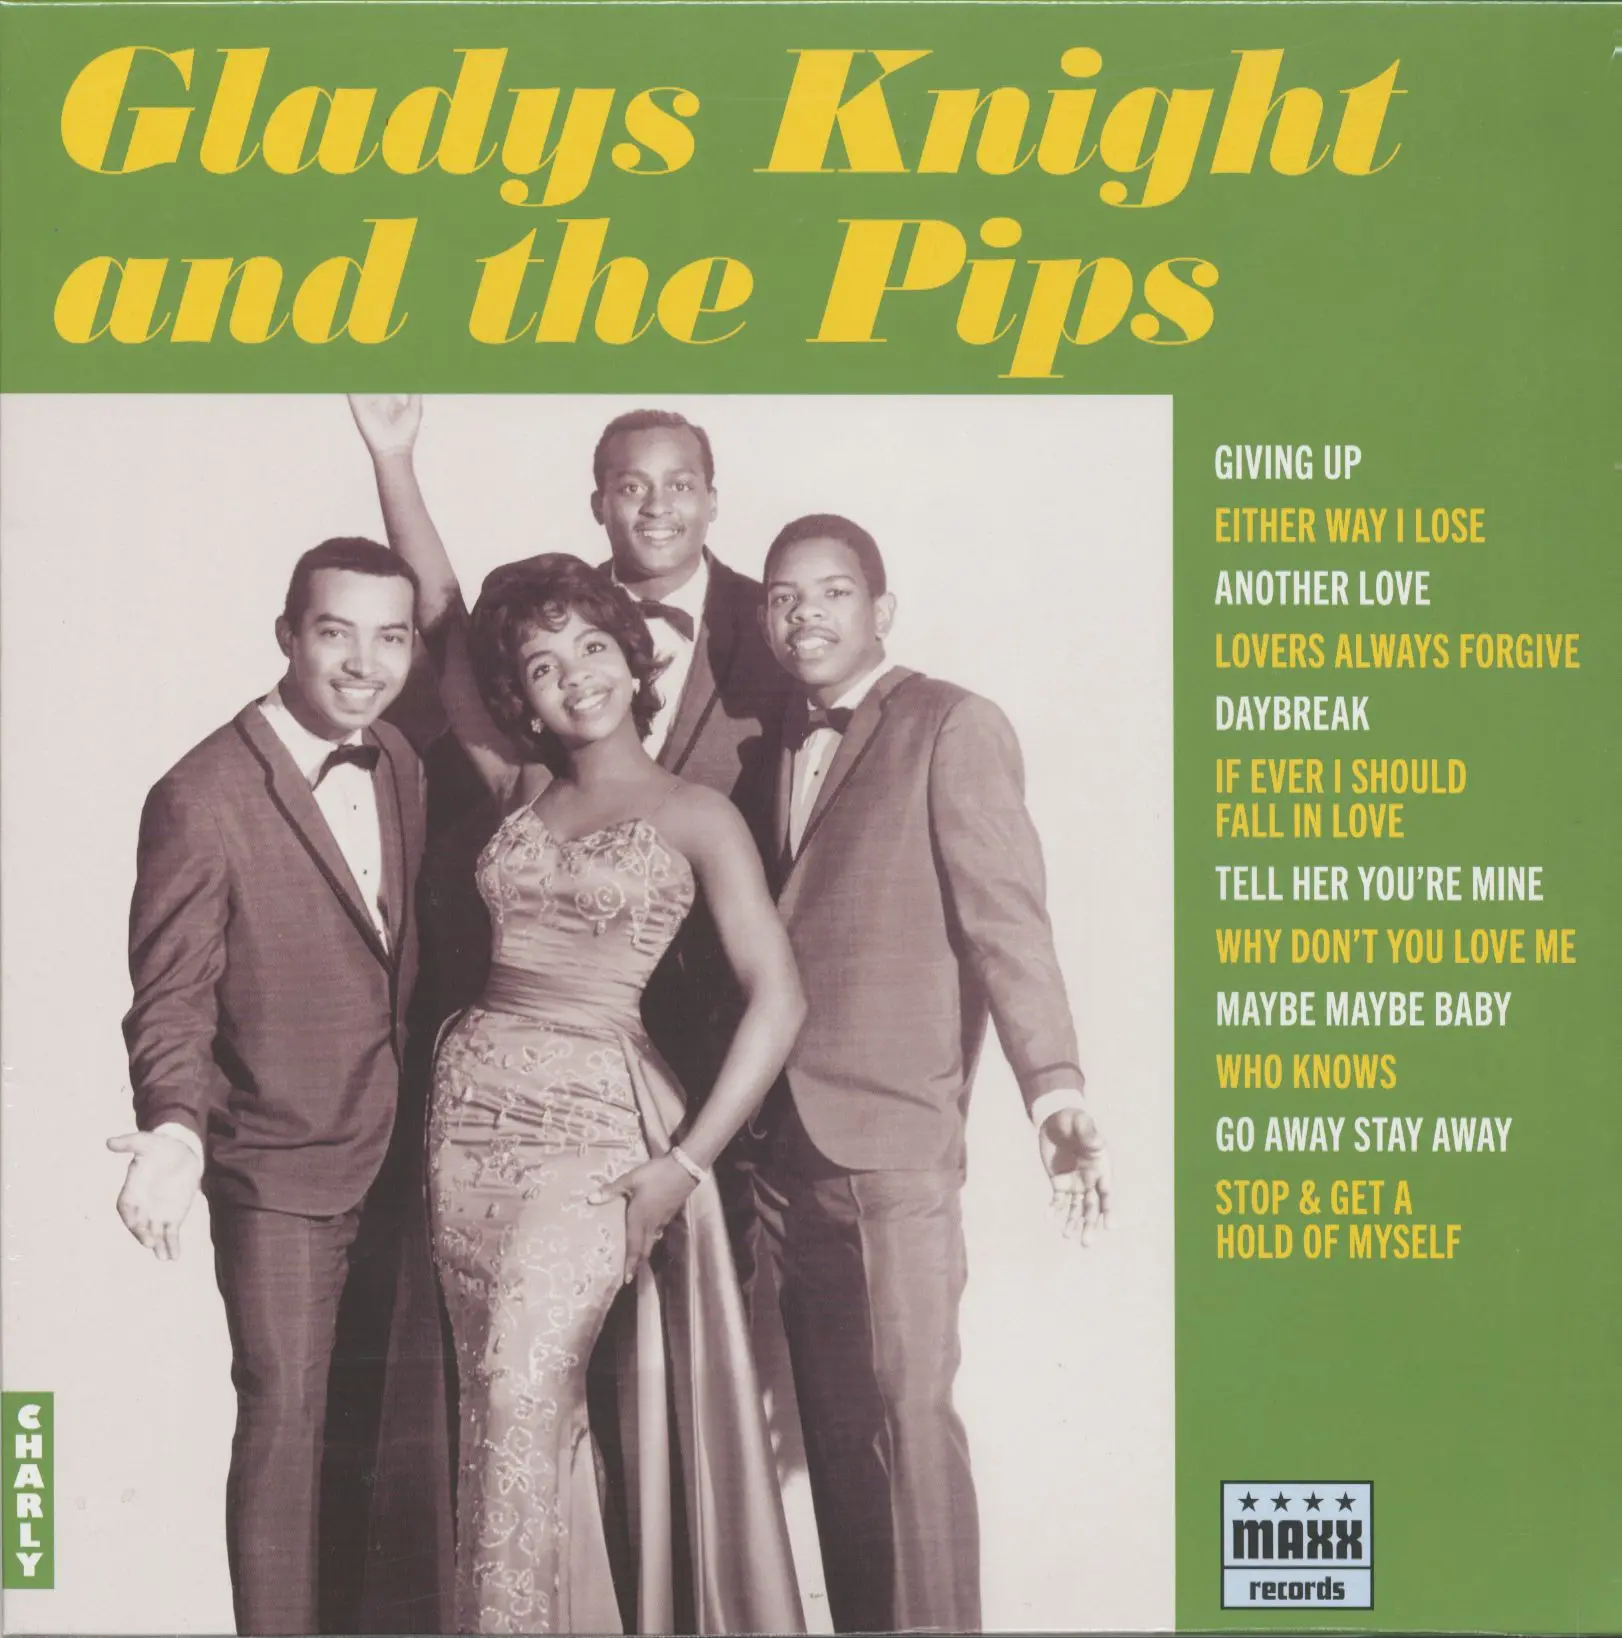 Gladys Knight & The Pips by Gladys Knight & The Pips